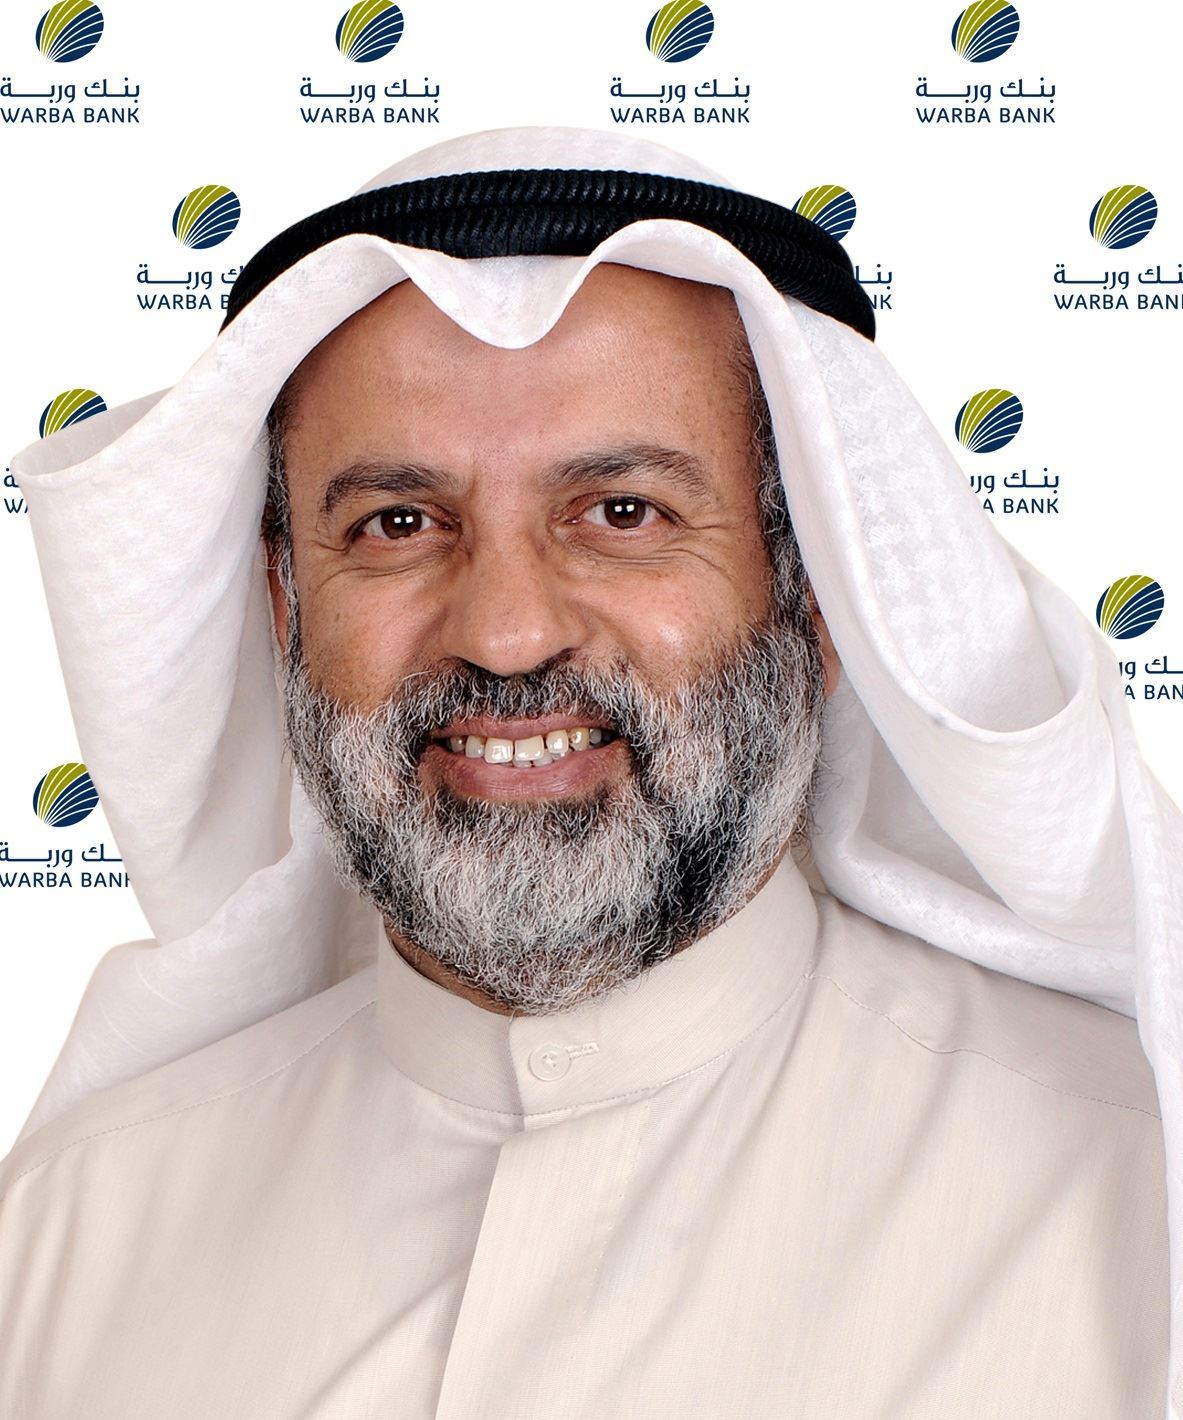 السيد/ عبد الوهاب عبد الله الحوطي، رئيس مجلس إدارة بنك وربة